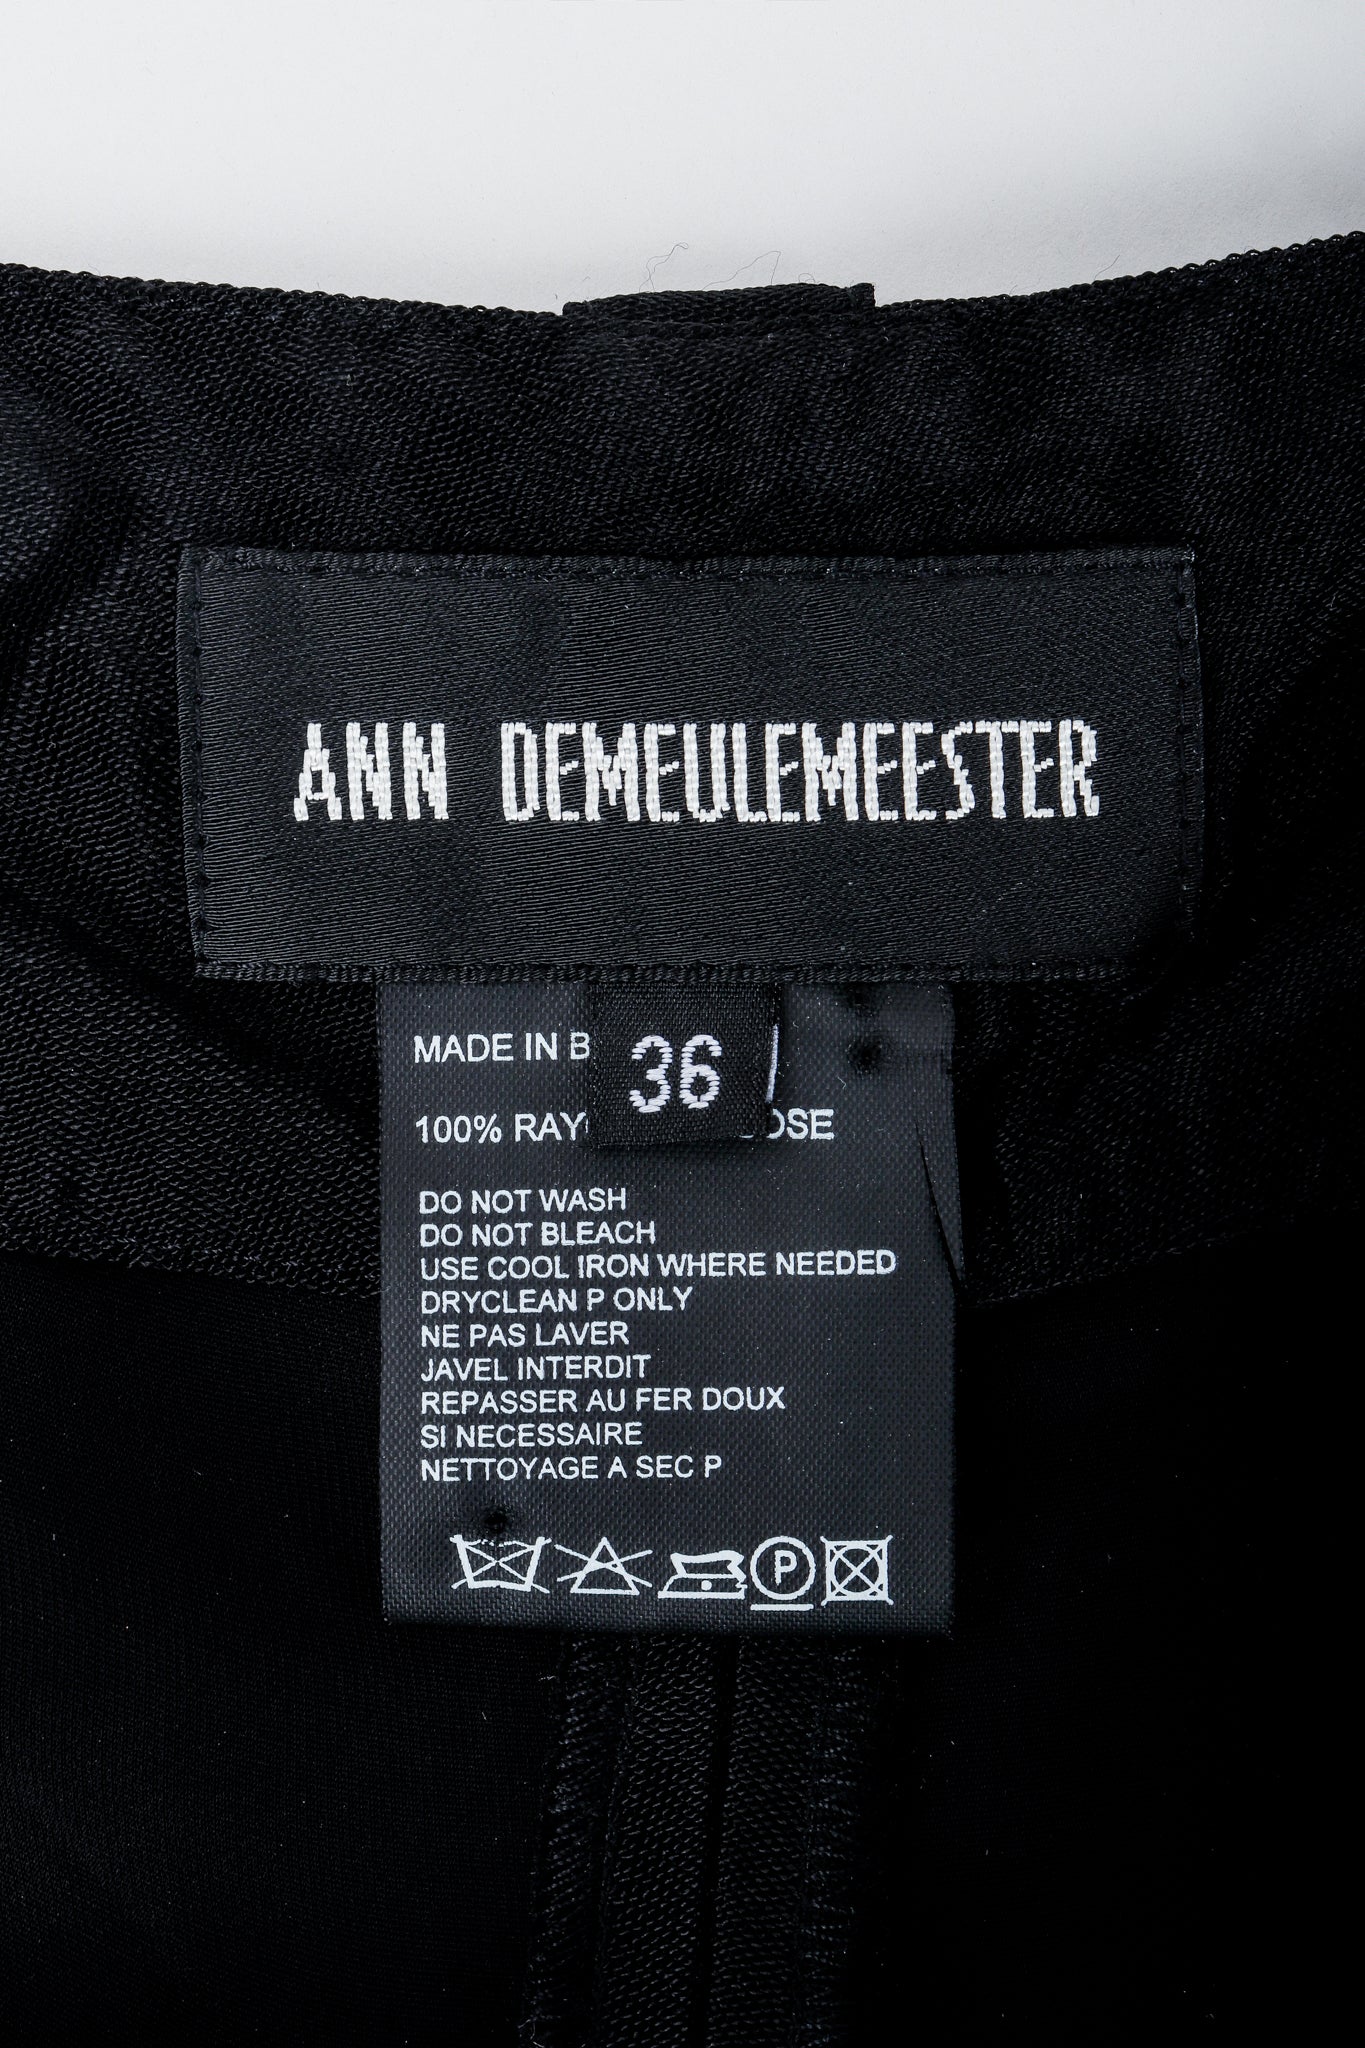 Vintage Ann Demeulemeester Label on Black